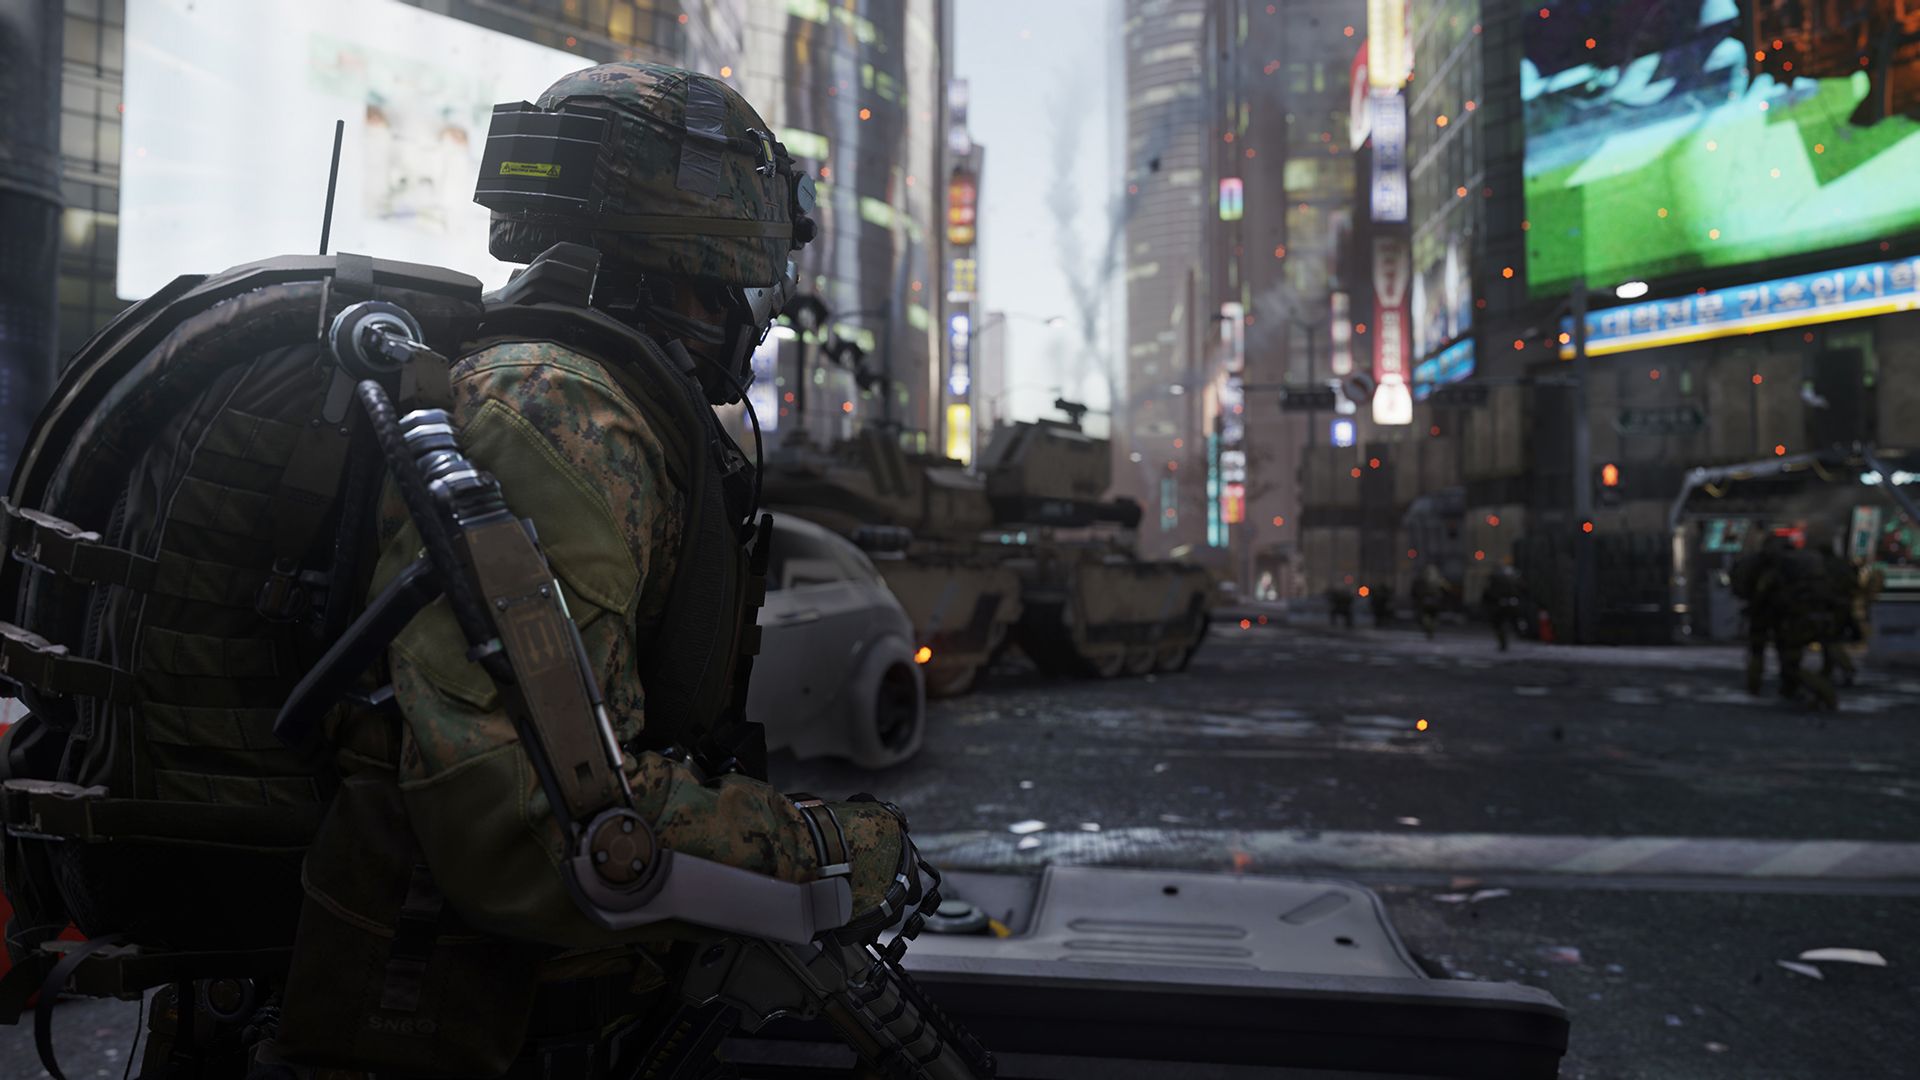 Presentados los requisitos de sistema para Call of Duty: Advanced Warfare -  Call of Duty: Advanced Warfare - 3DJuegos